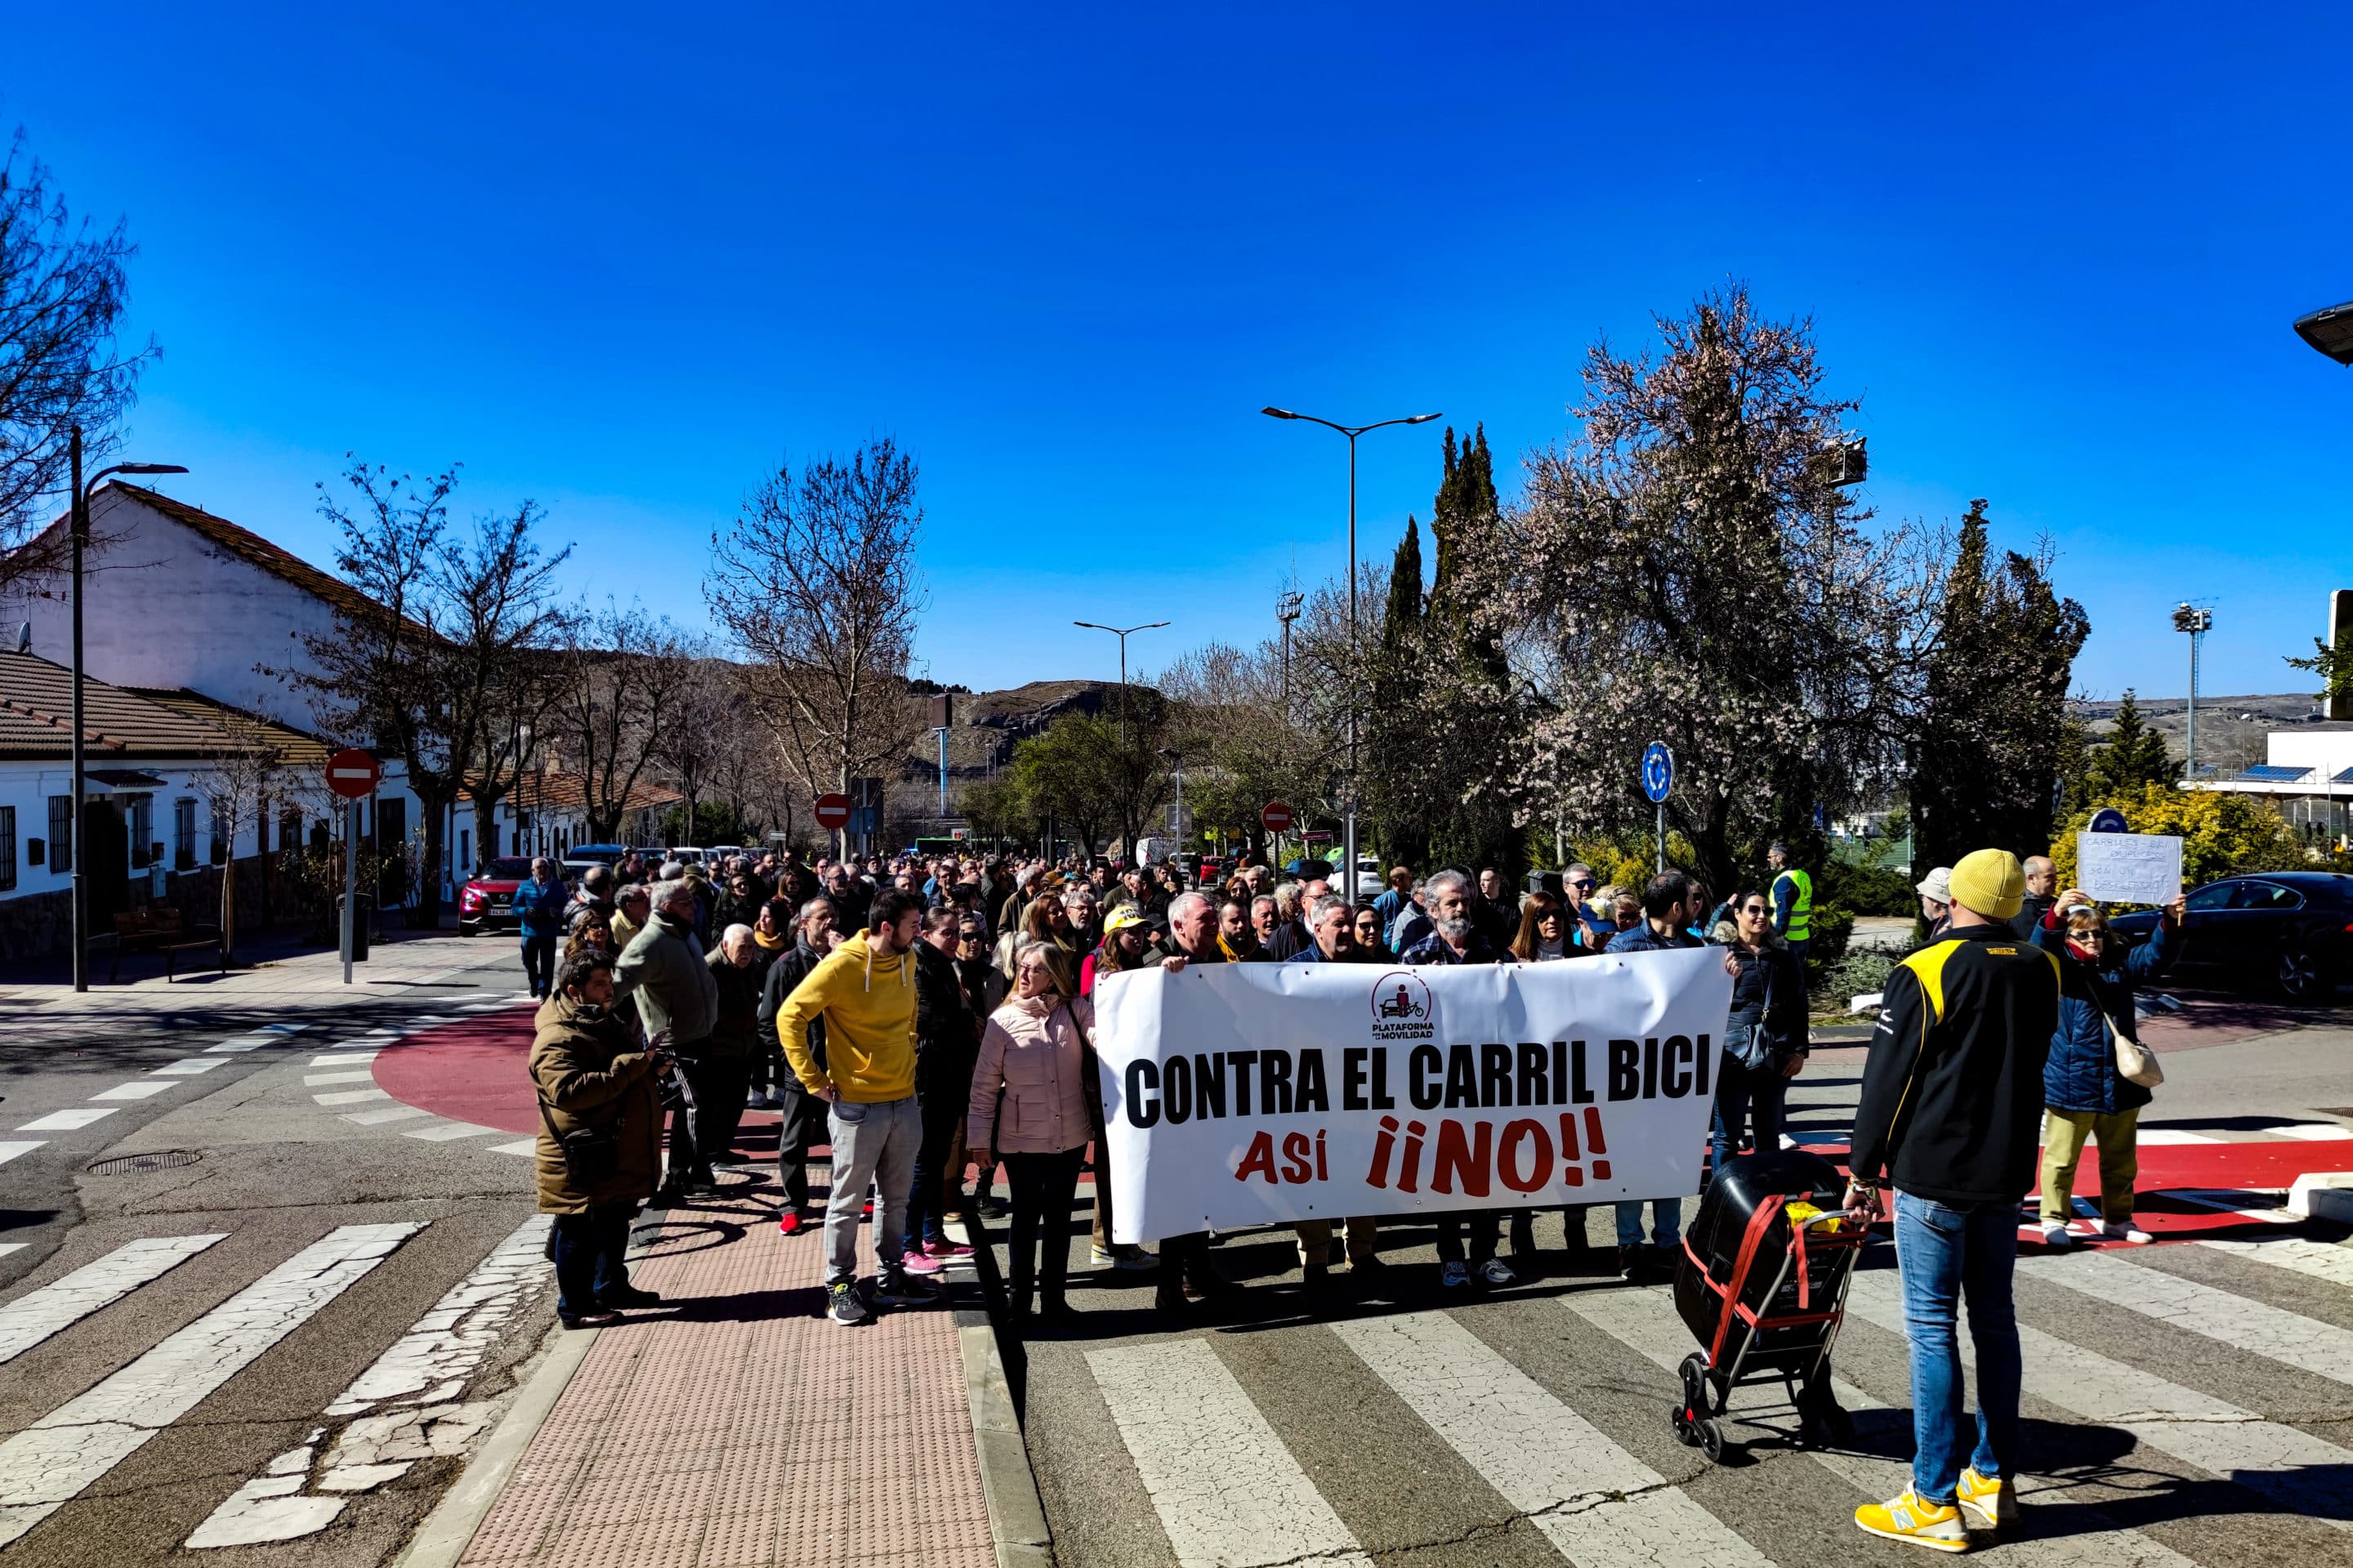 La manifestación sale del Metro de Rivas Vaciamadrid